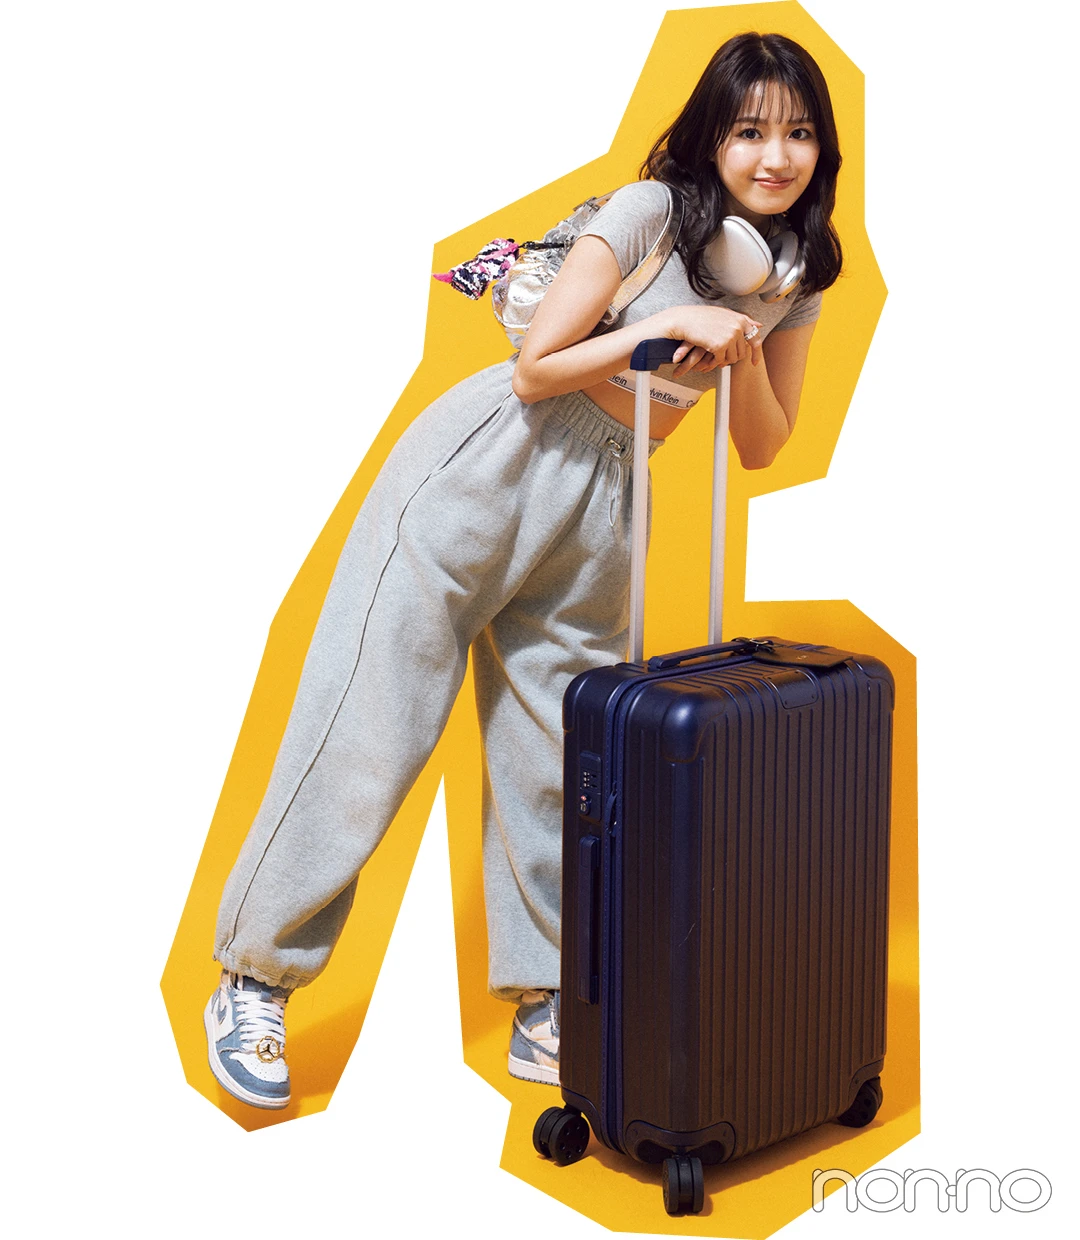 香音のスーツケースの中身モデルカット1-1